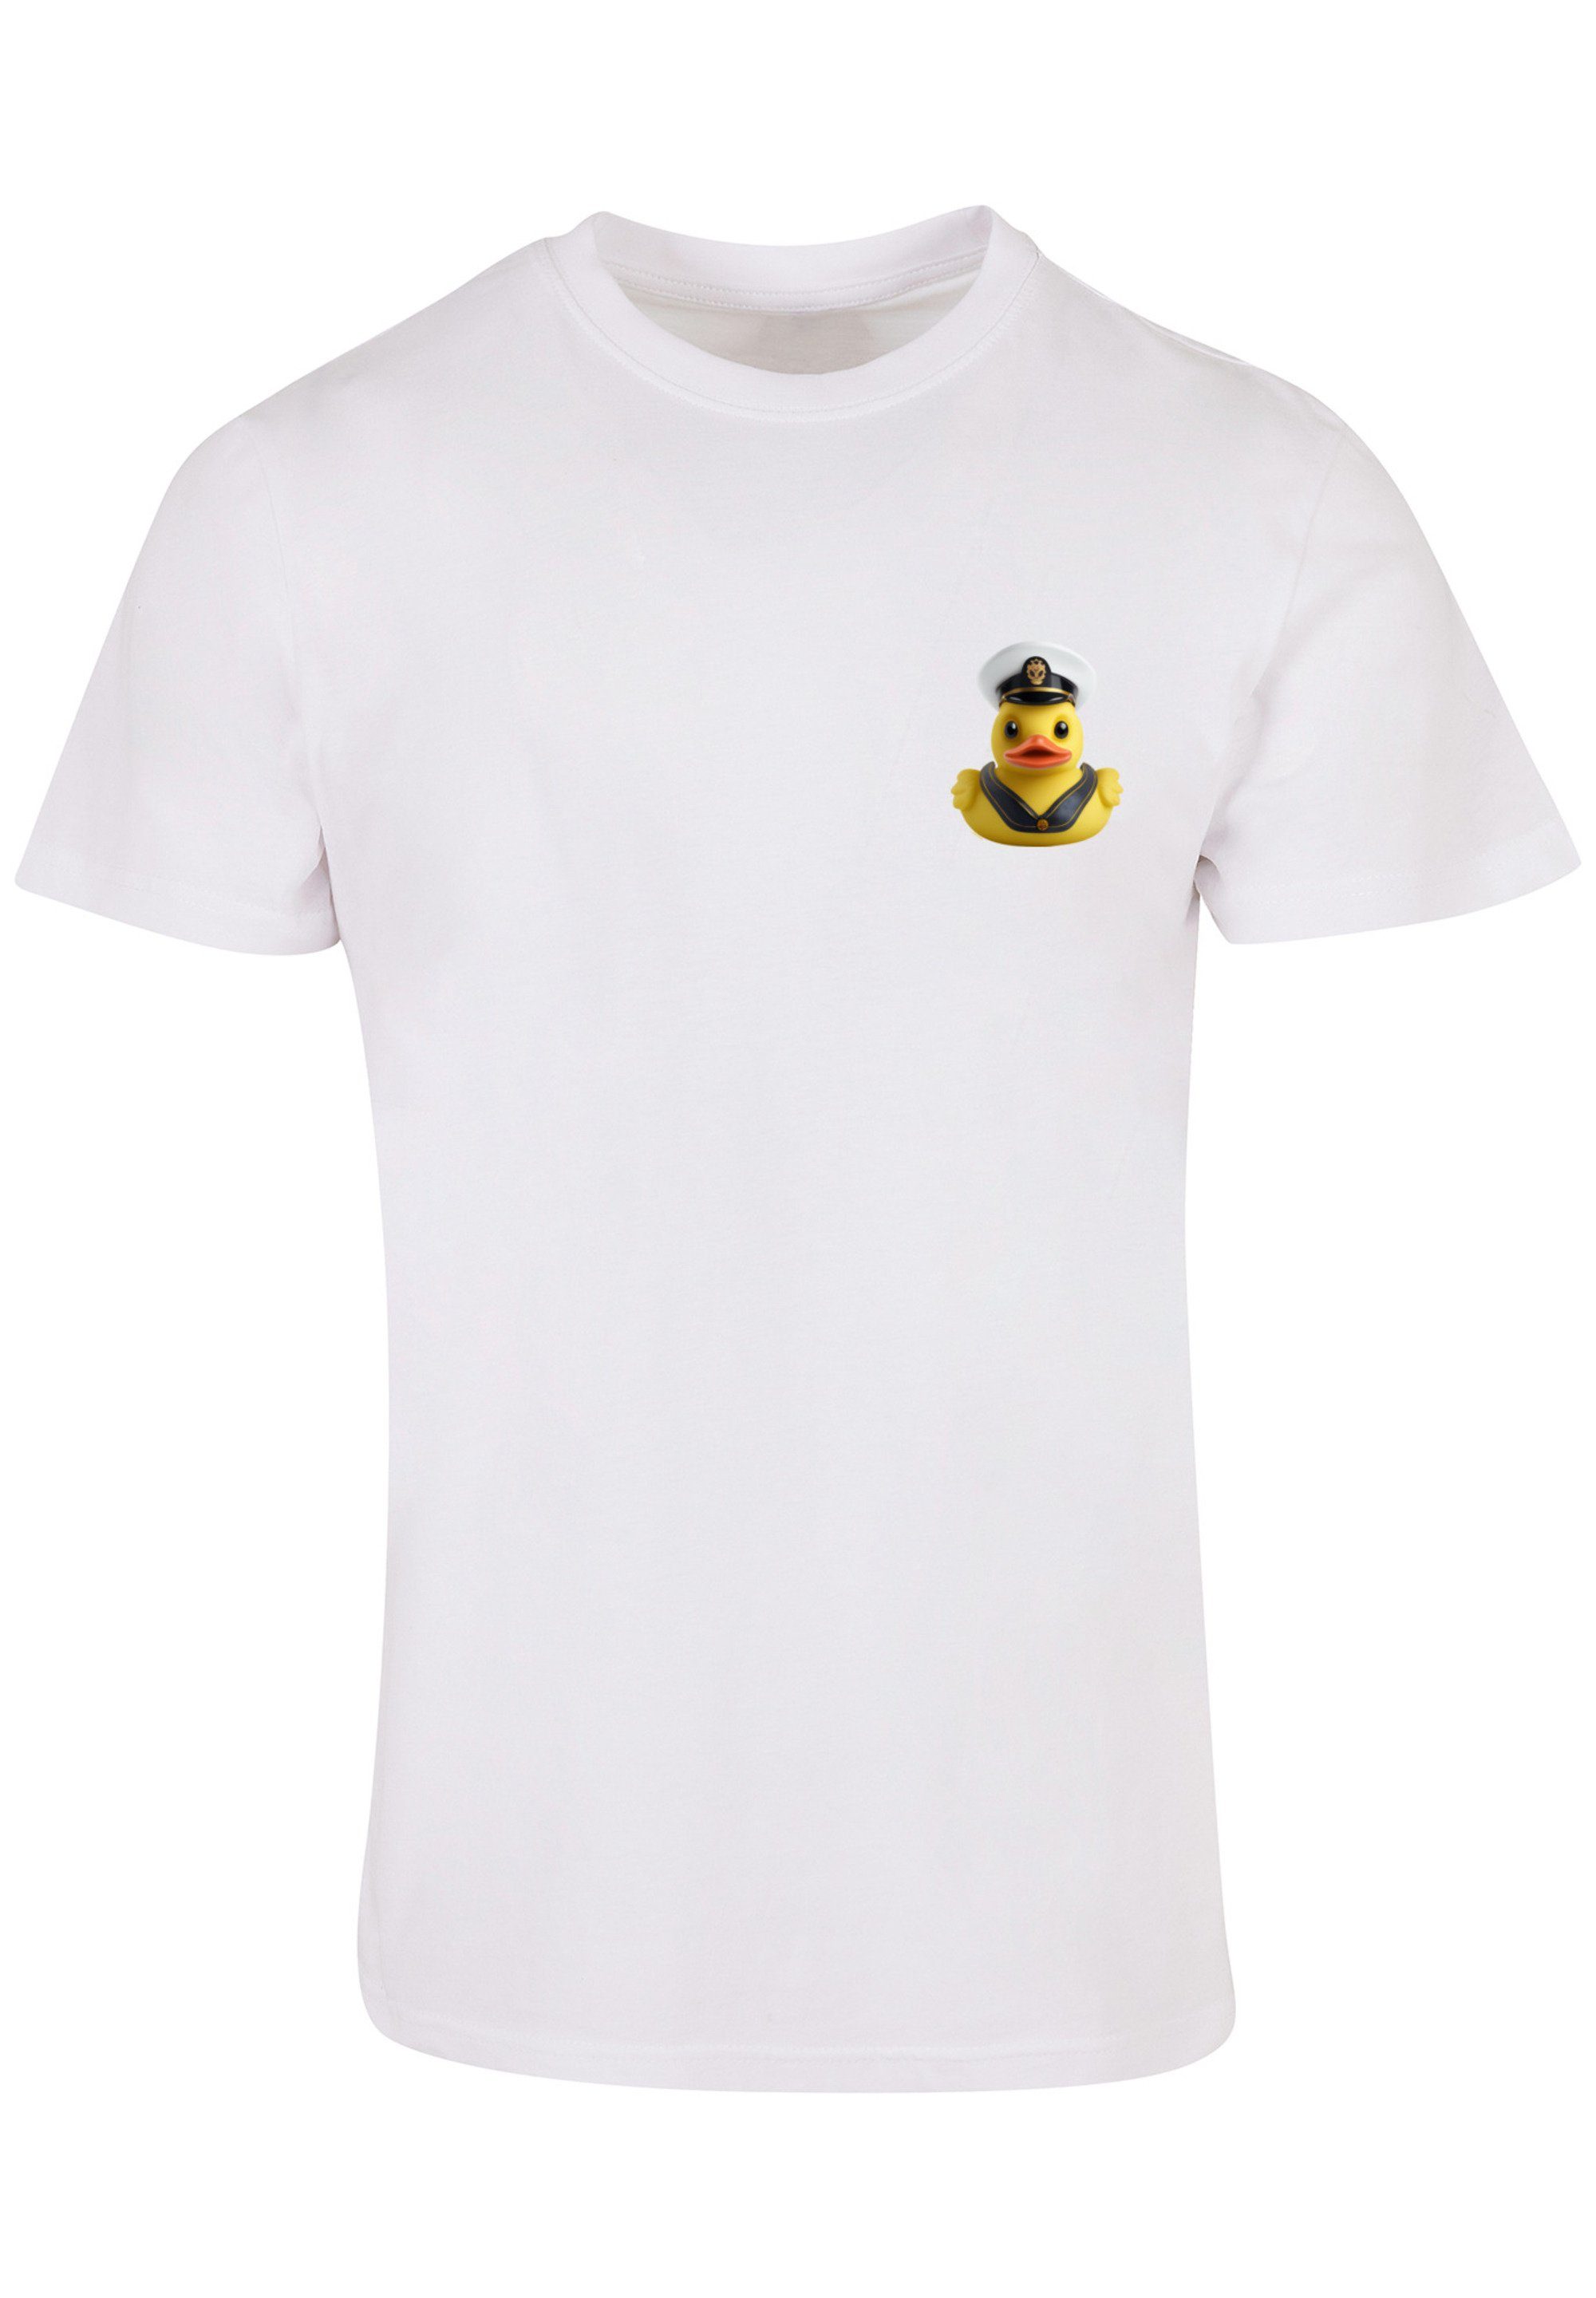 F4NT4STIC T-Shirt Rubber hohem Duck Sehr TEE Print, Baumwollstoff weicher Tragekomfort UNISEX mit Captain